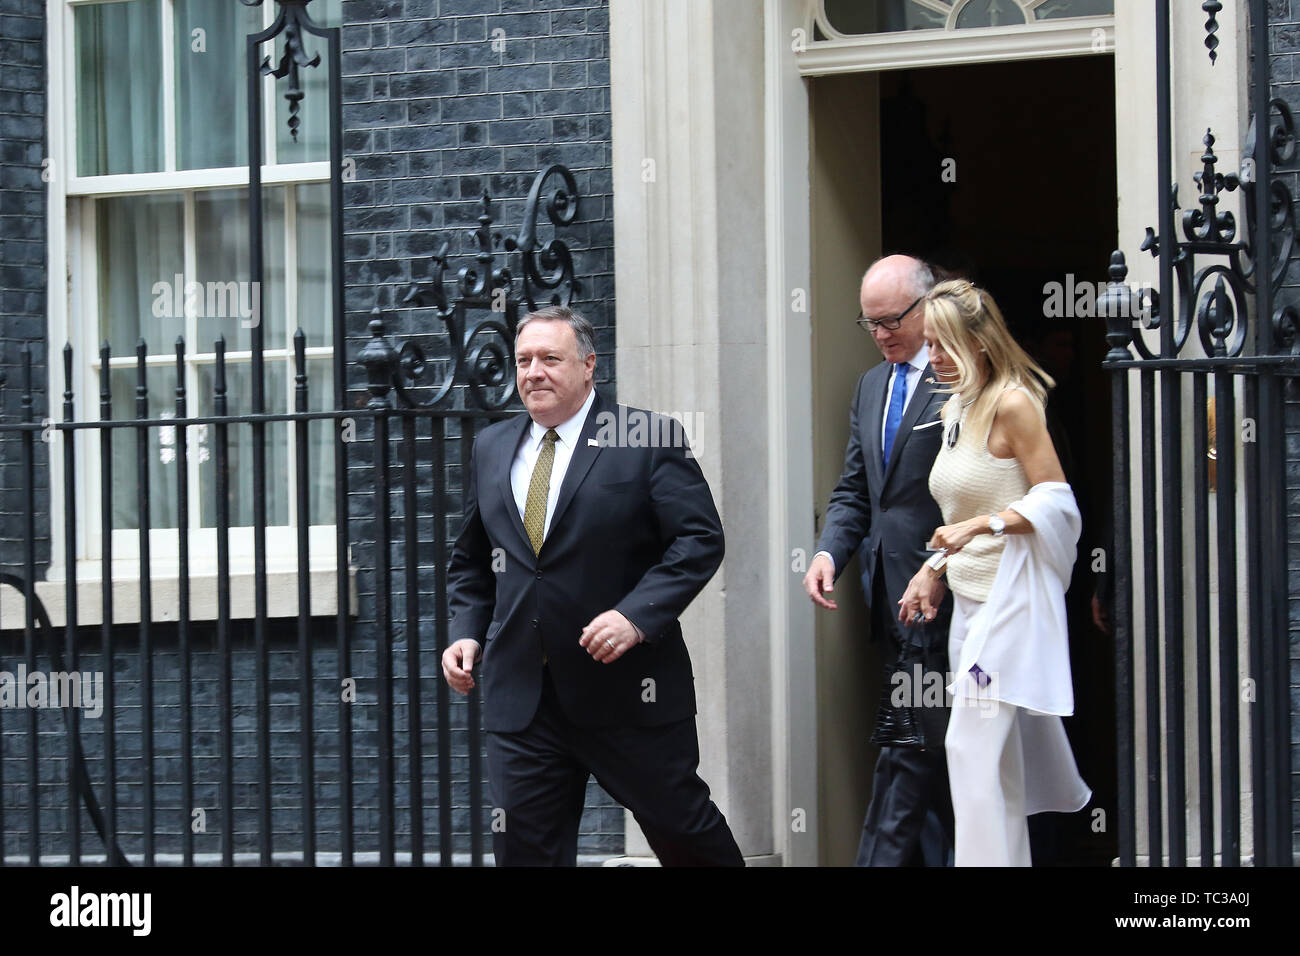 Mike Pompeo, Stati Uniti d'America visita presidenziale per il Regno Unito, Downing Street, Londra, Regno Unito, 04 giugno 2019, Foto di Richard Goldschmidt Foto Stock